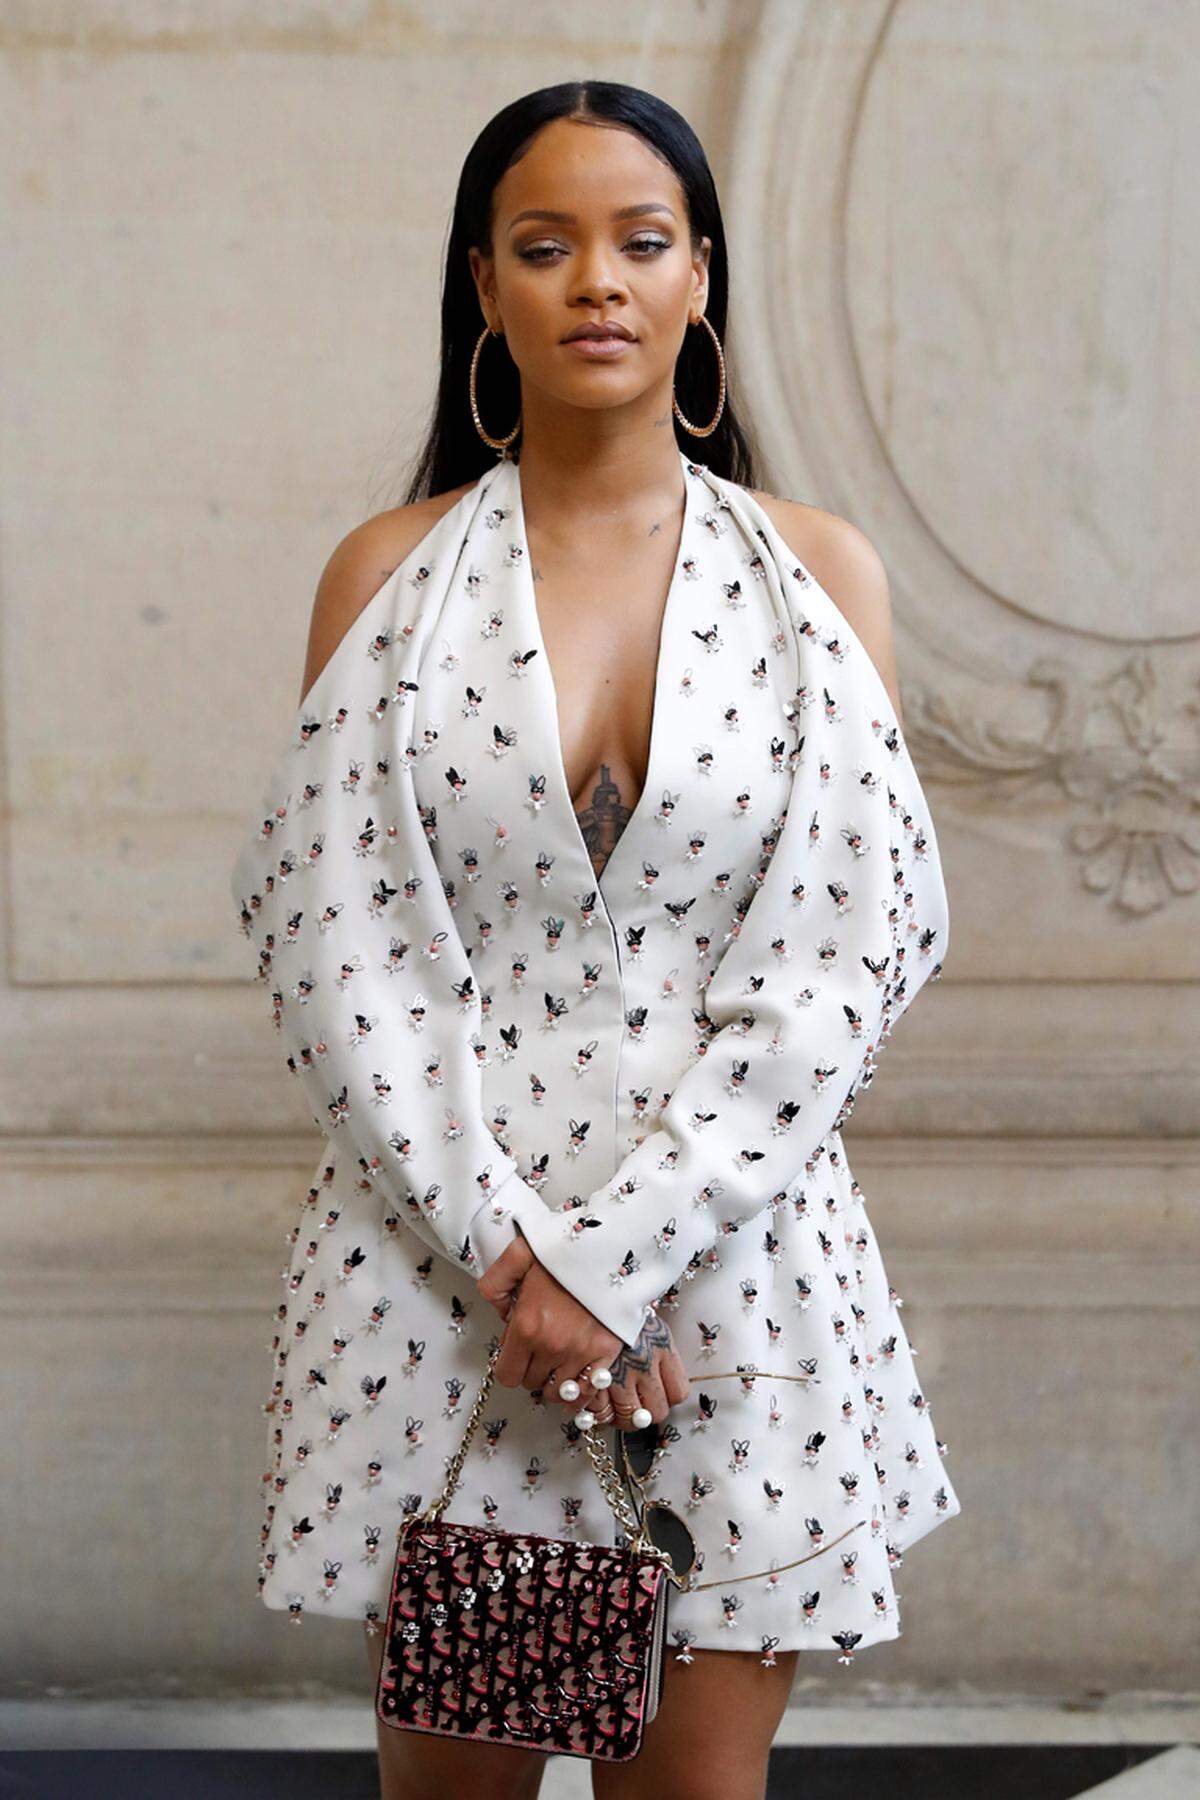 Rihanna, die für Puma ihren Auftritt als Designerin bereits hinter sich hatte, nahm neben dem Topmodel Platz.